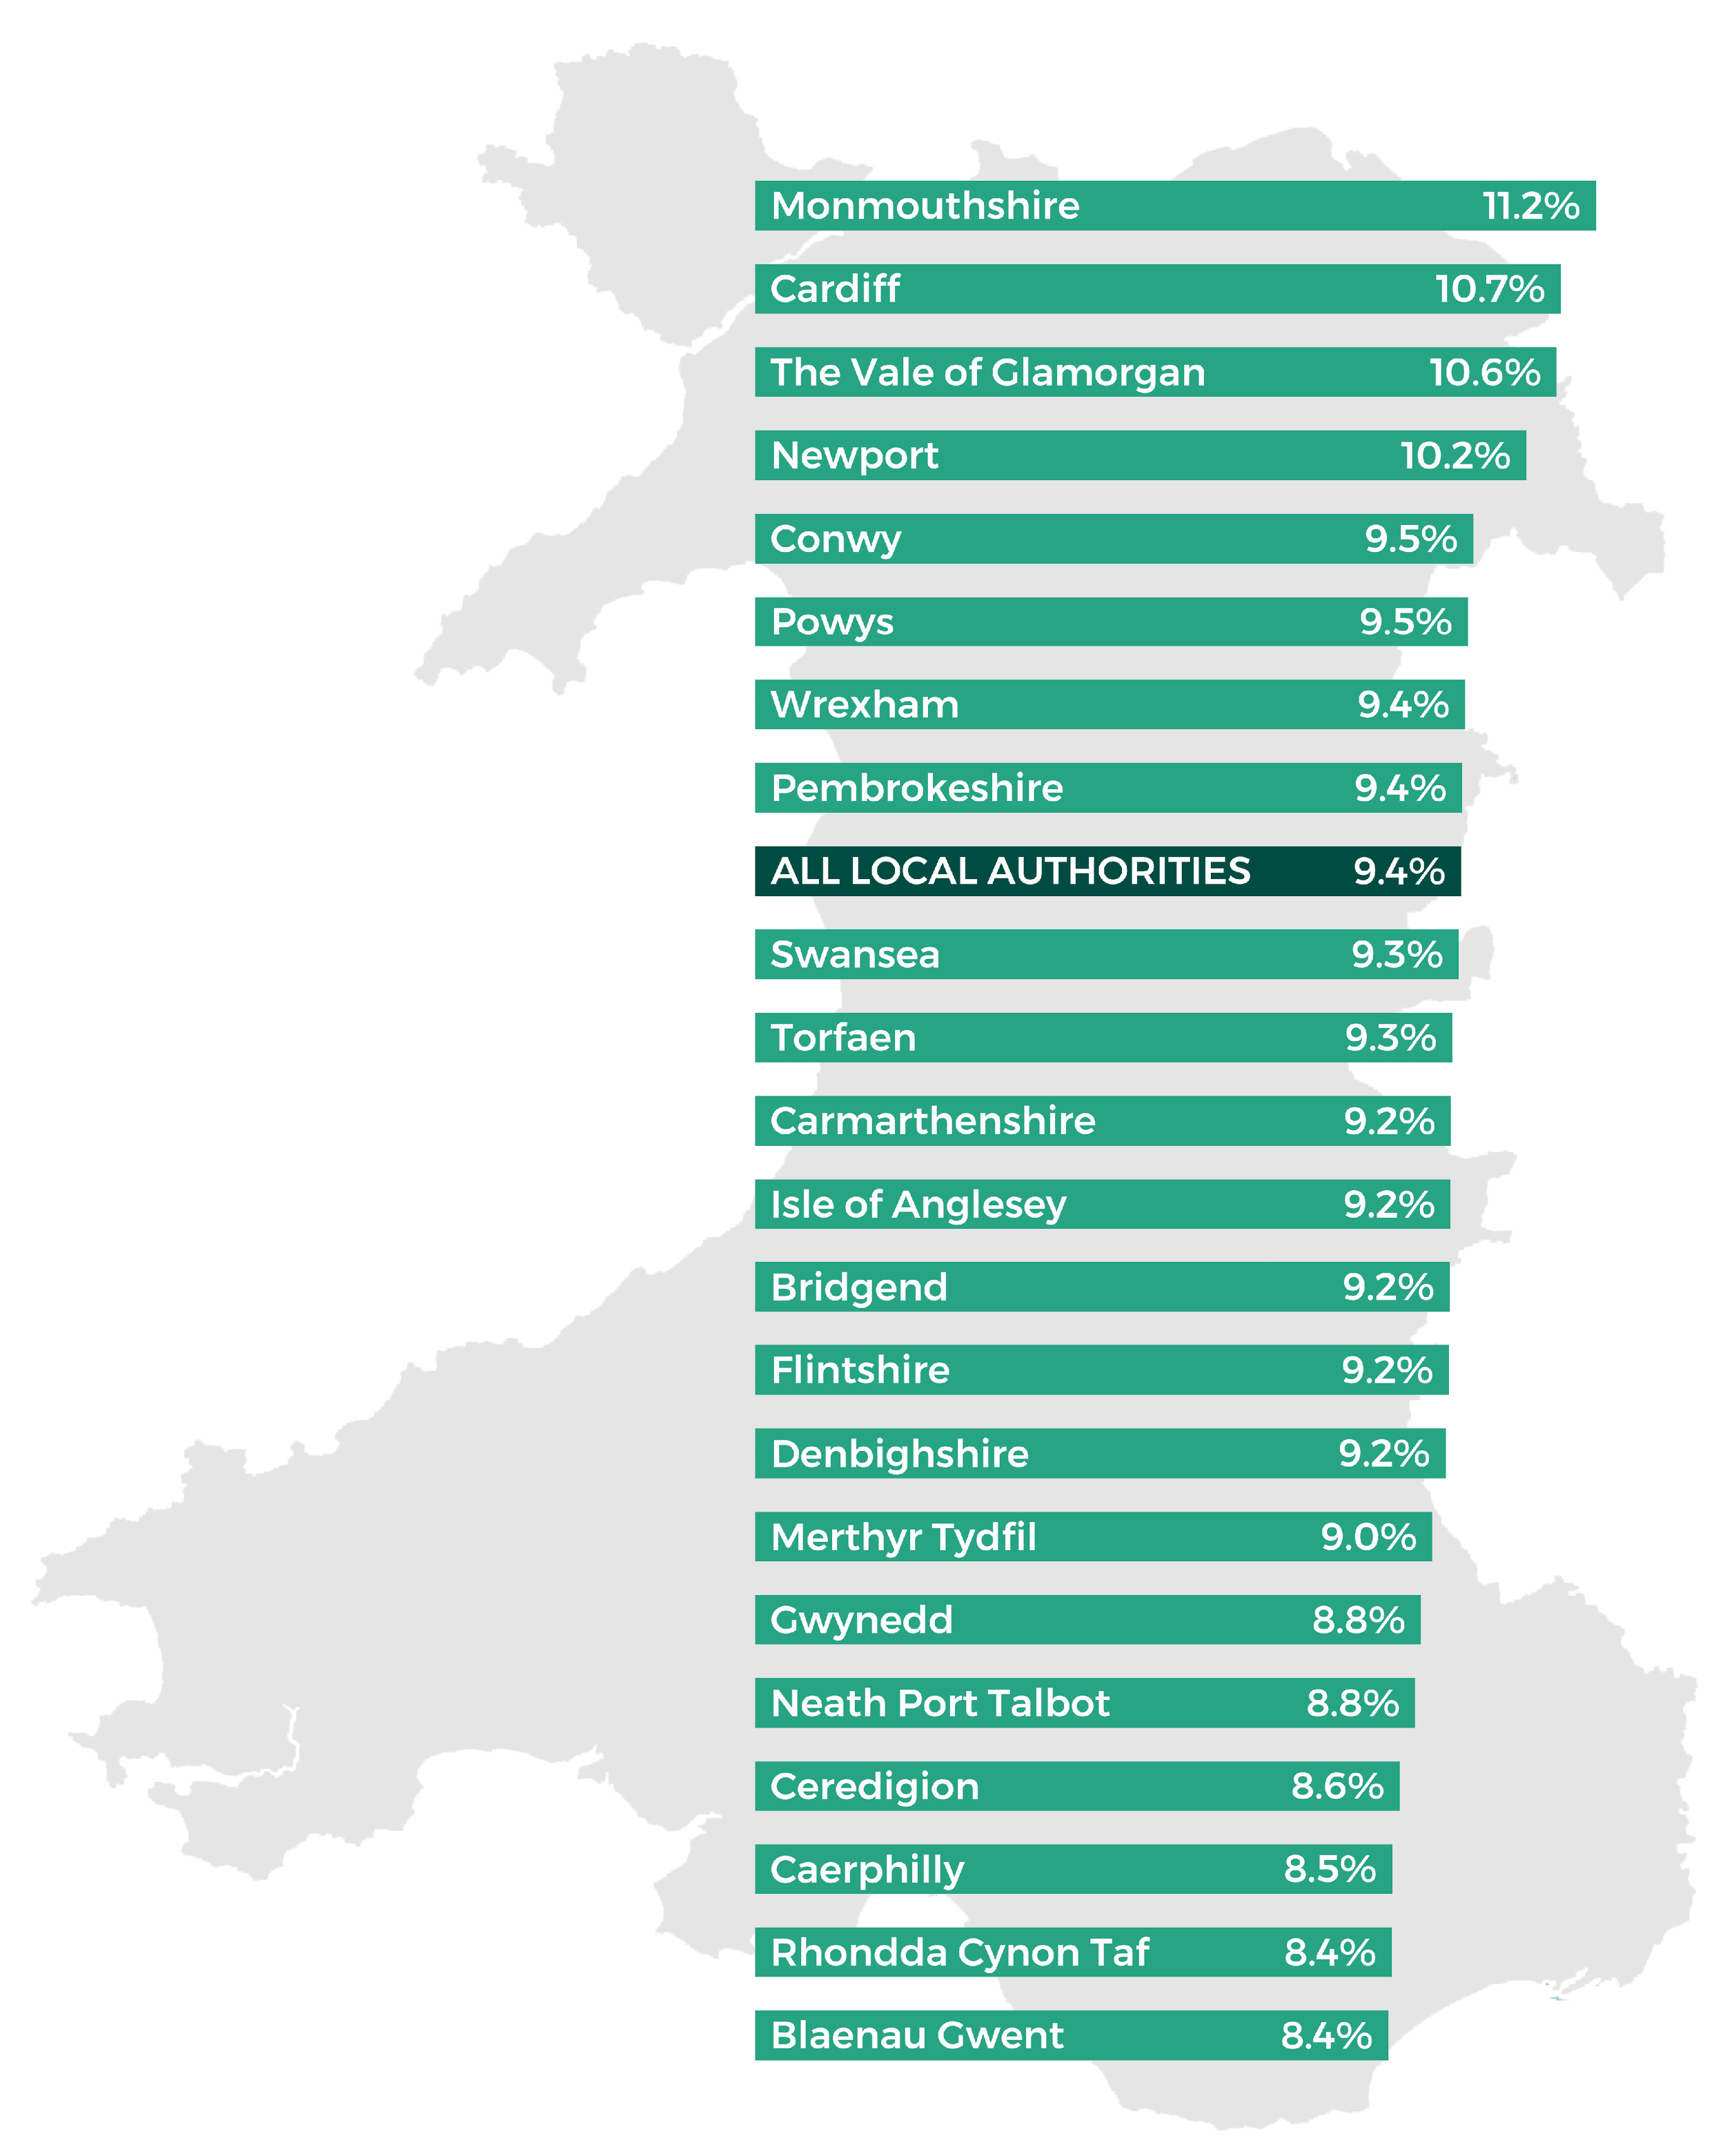 Blaenau Gwent 8.4%, Rhondda Cynon Taf 8.4%, Caerphilly 8.5%, Ceredigion 8.6%, Neath Port Talbot  8.8%, Gwynedd 8.8%, Merthyr Tydfil 9.0%, Denbighshire 9.2%, Flintshire 9.2%, Bridgend  9.2%, Isle of Anglesey  9.2%, Carmarthenshire 9.2%, Torfaen 9.3%, Swansea  9.3%, ALL LOCAL AUTHORITIES 9.4%, Pembrokeshire 9.4%, Wrexham  9.4%, Powys 9.5%, Conwy 9.5%, Newport 10.2%, The Vale of Glamorgan 10.6%, Cardiff 10.7%, Monmouthshire 11.2%.